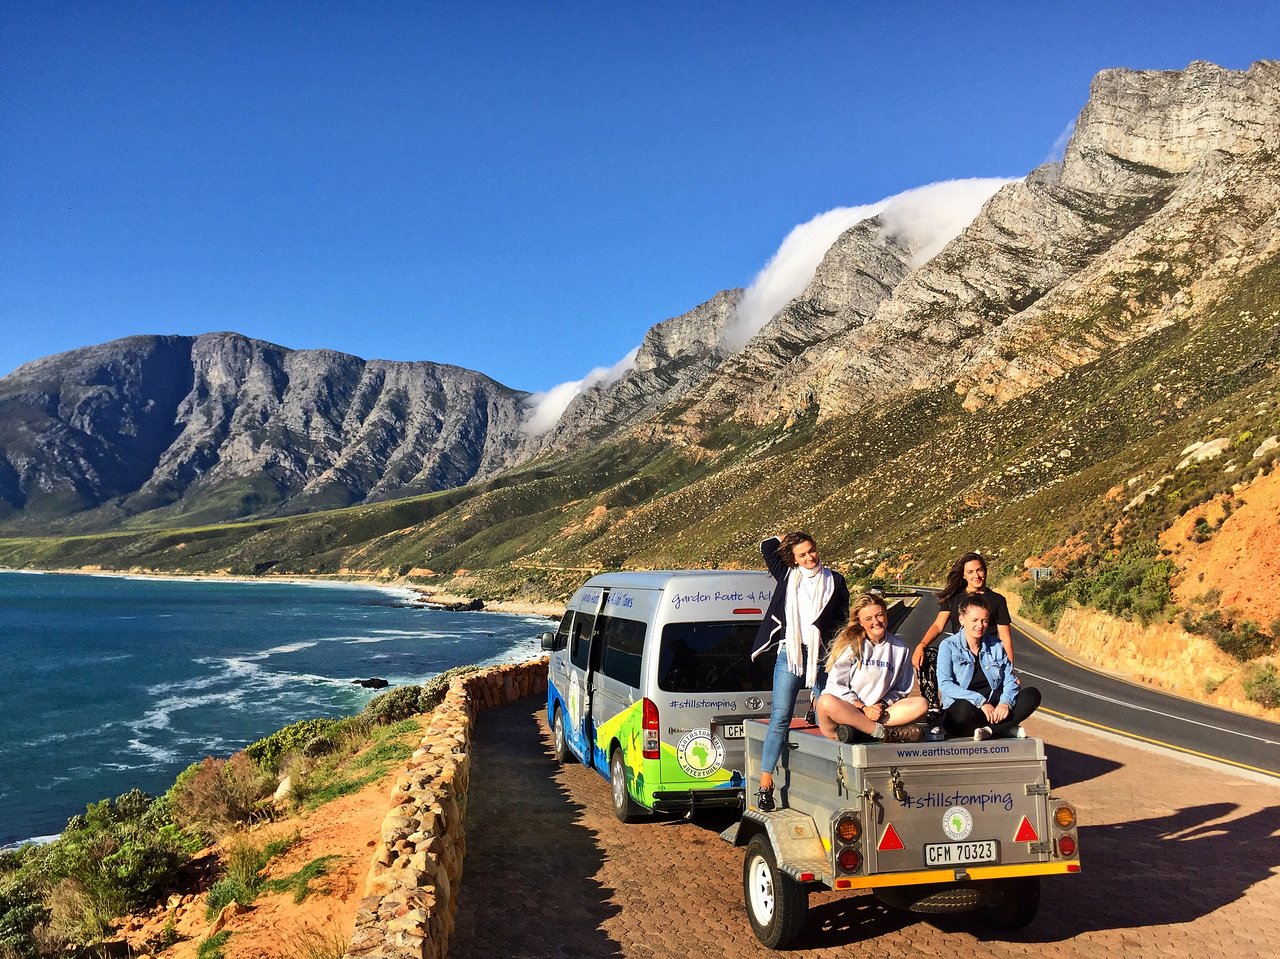 Đổi gió du lịch 2022 đi Nam Phi trải nghiệm sự hoang dã